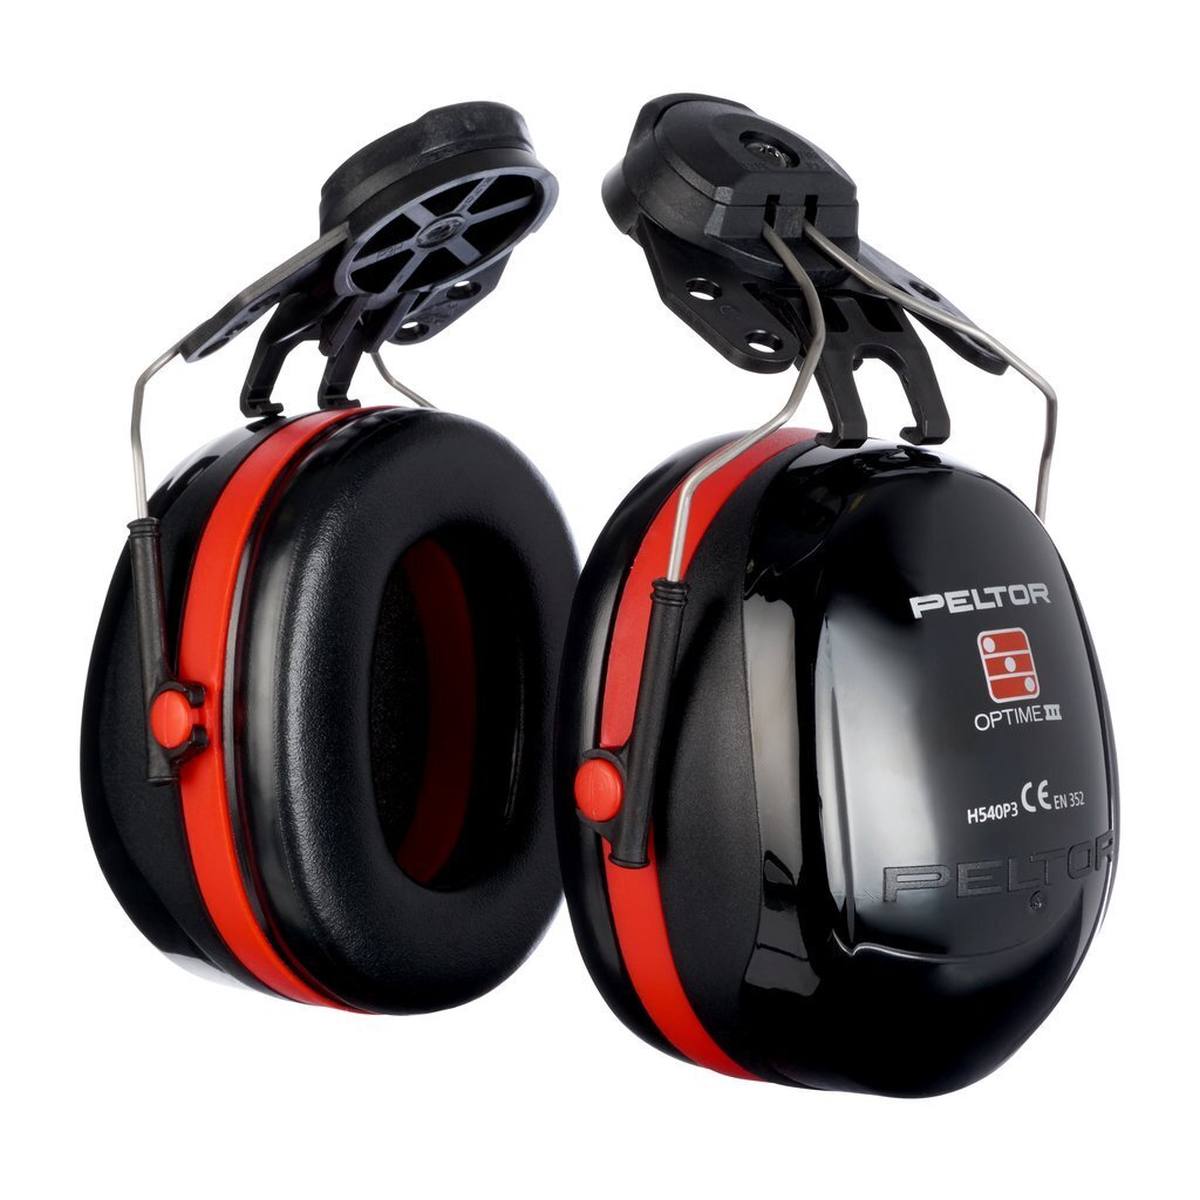 3M PELTOR Optime III -kuulokkeet, kypäräkiinnitys, musta, kypäräadapterilla, SNR=34 dB, H540P3H-413-SV